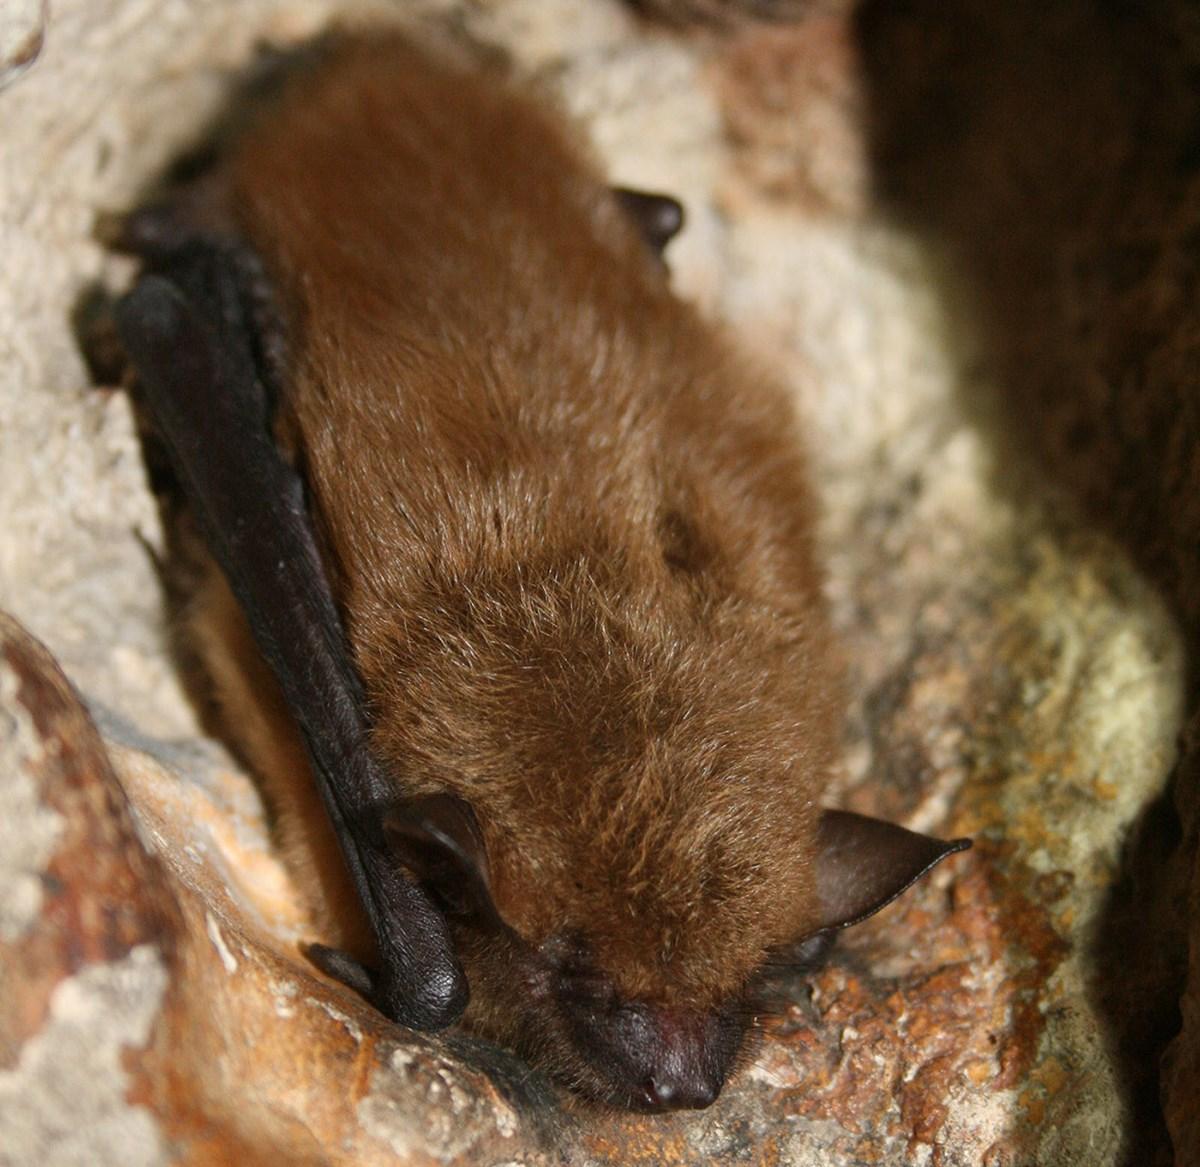 Big Brown Bat at rest